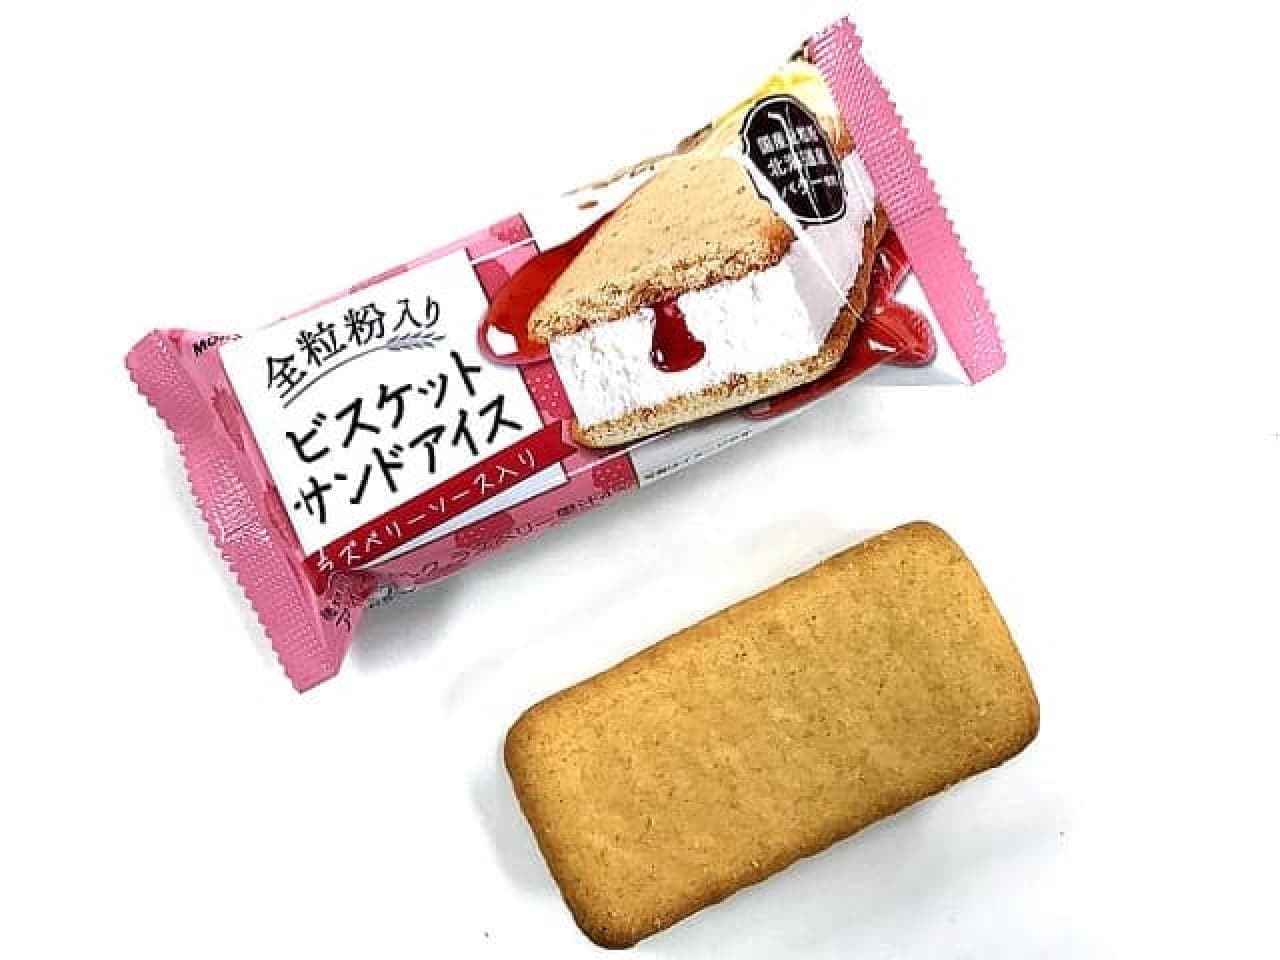 セブン-イレブン「森永製菓 全粒粉入り ビスケットサンドアイス」